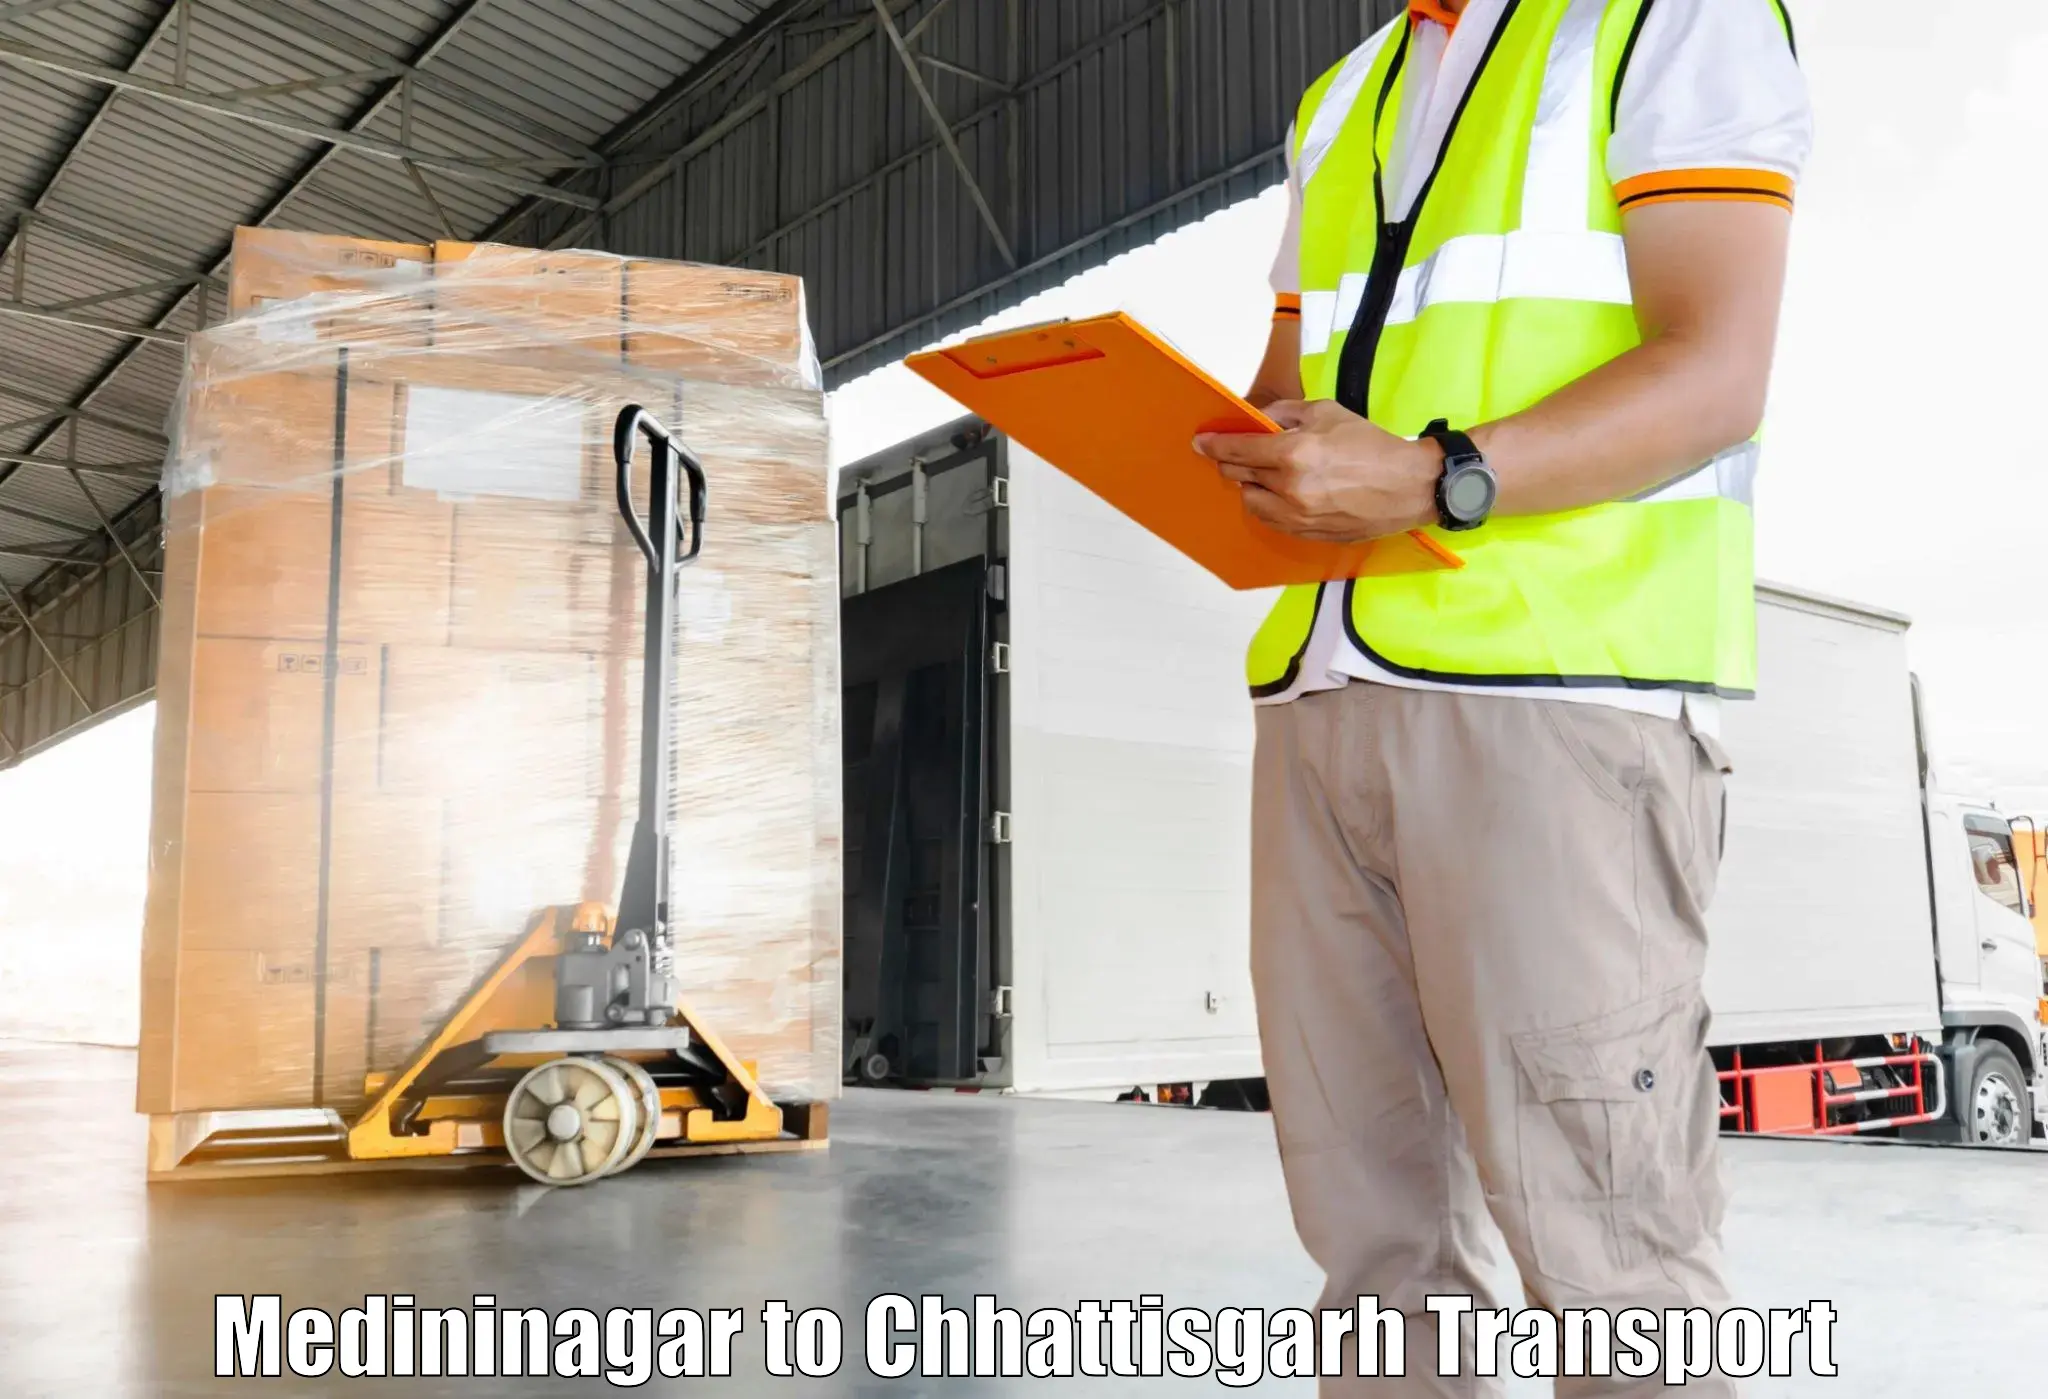 Transport in sharing Medininagar to Patna Chhattisgarh